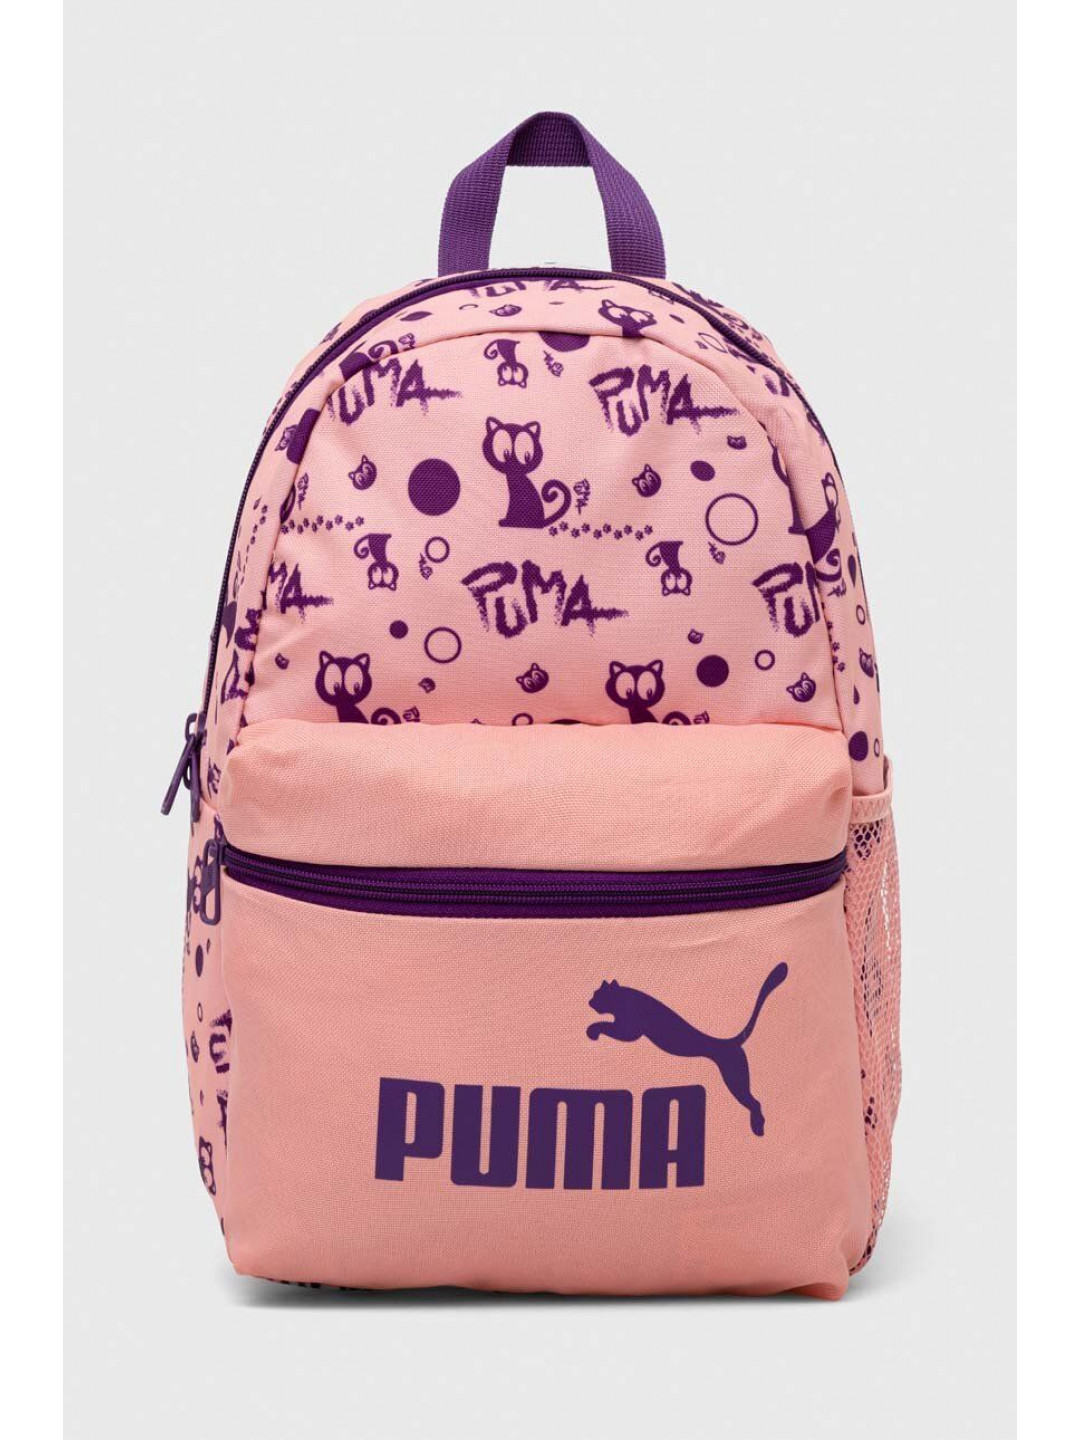 Batoh Puma Phase Small Backpack růžová barva malý vzorovaný